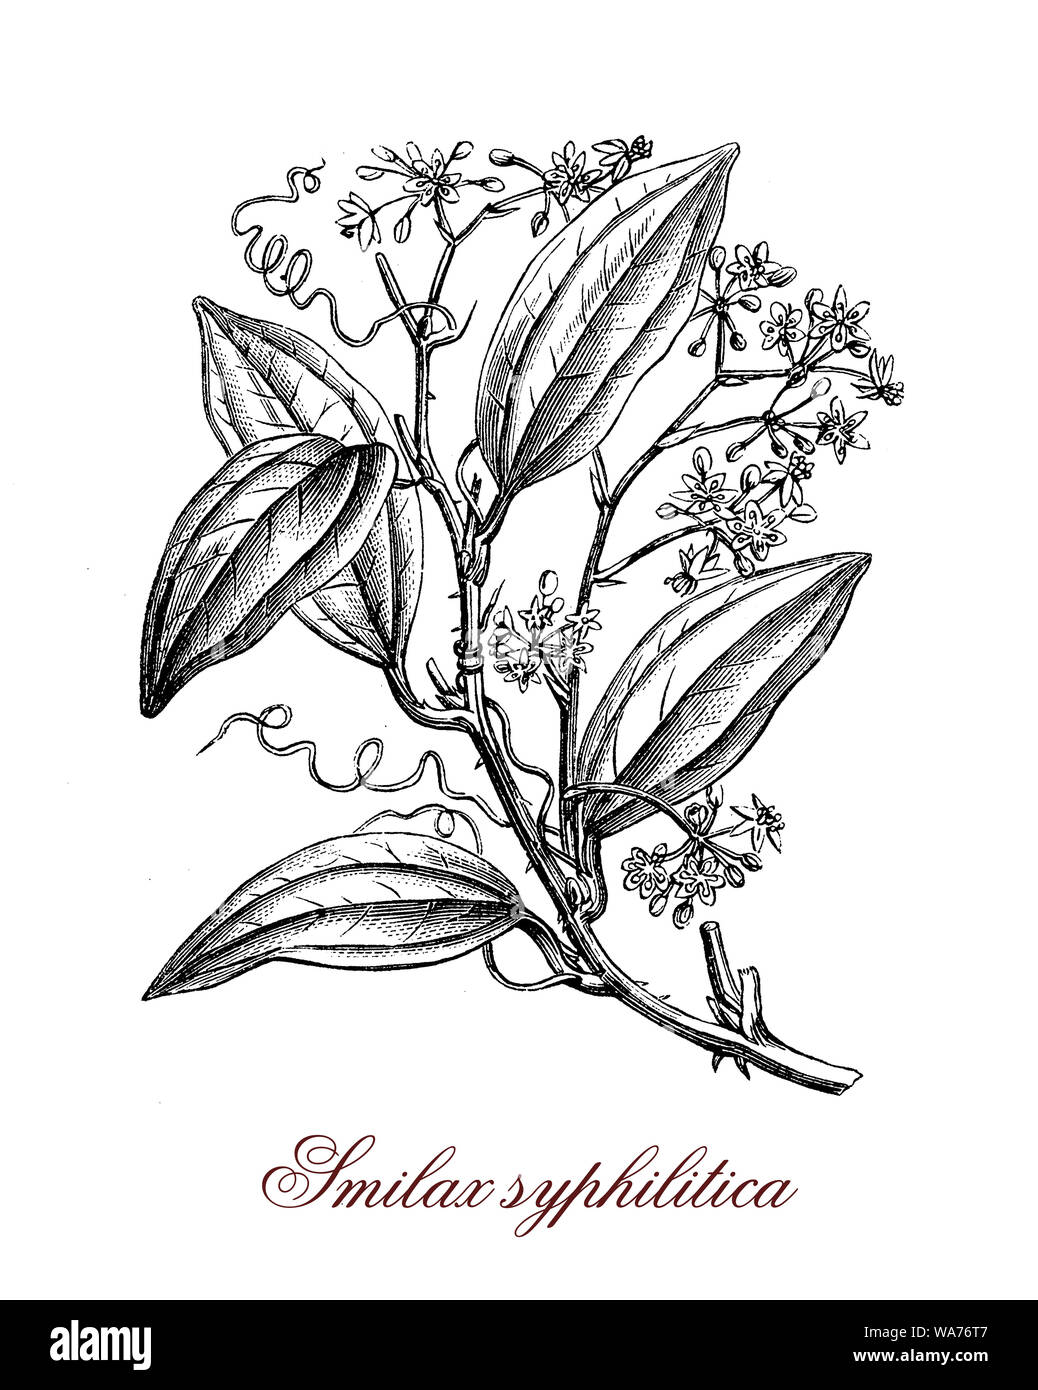 Smilax klettern blühende Pflanzen der tropischen Regionen mit Dornen und herzförmige Blätter. Essbar, in der traditionellen Medizin und von den Wurzeln für die sarsaparille Trinken verwendet Stockfoto